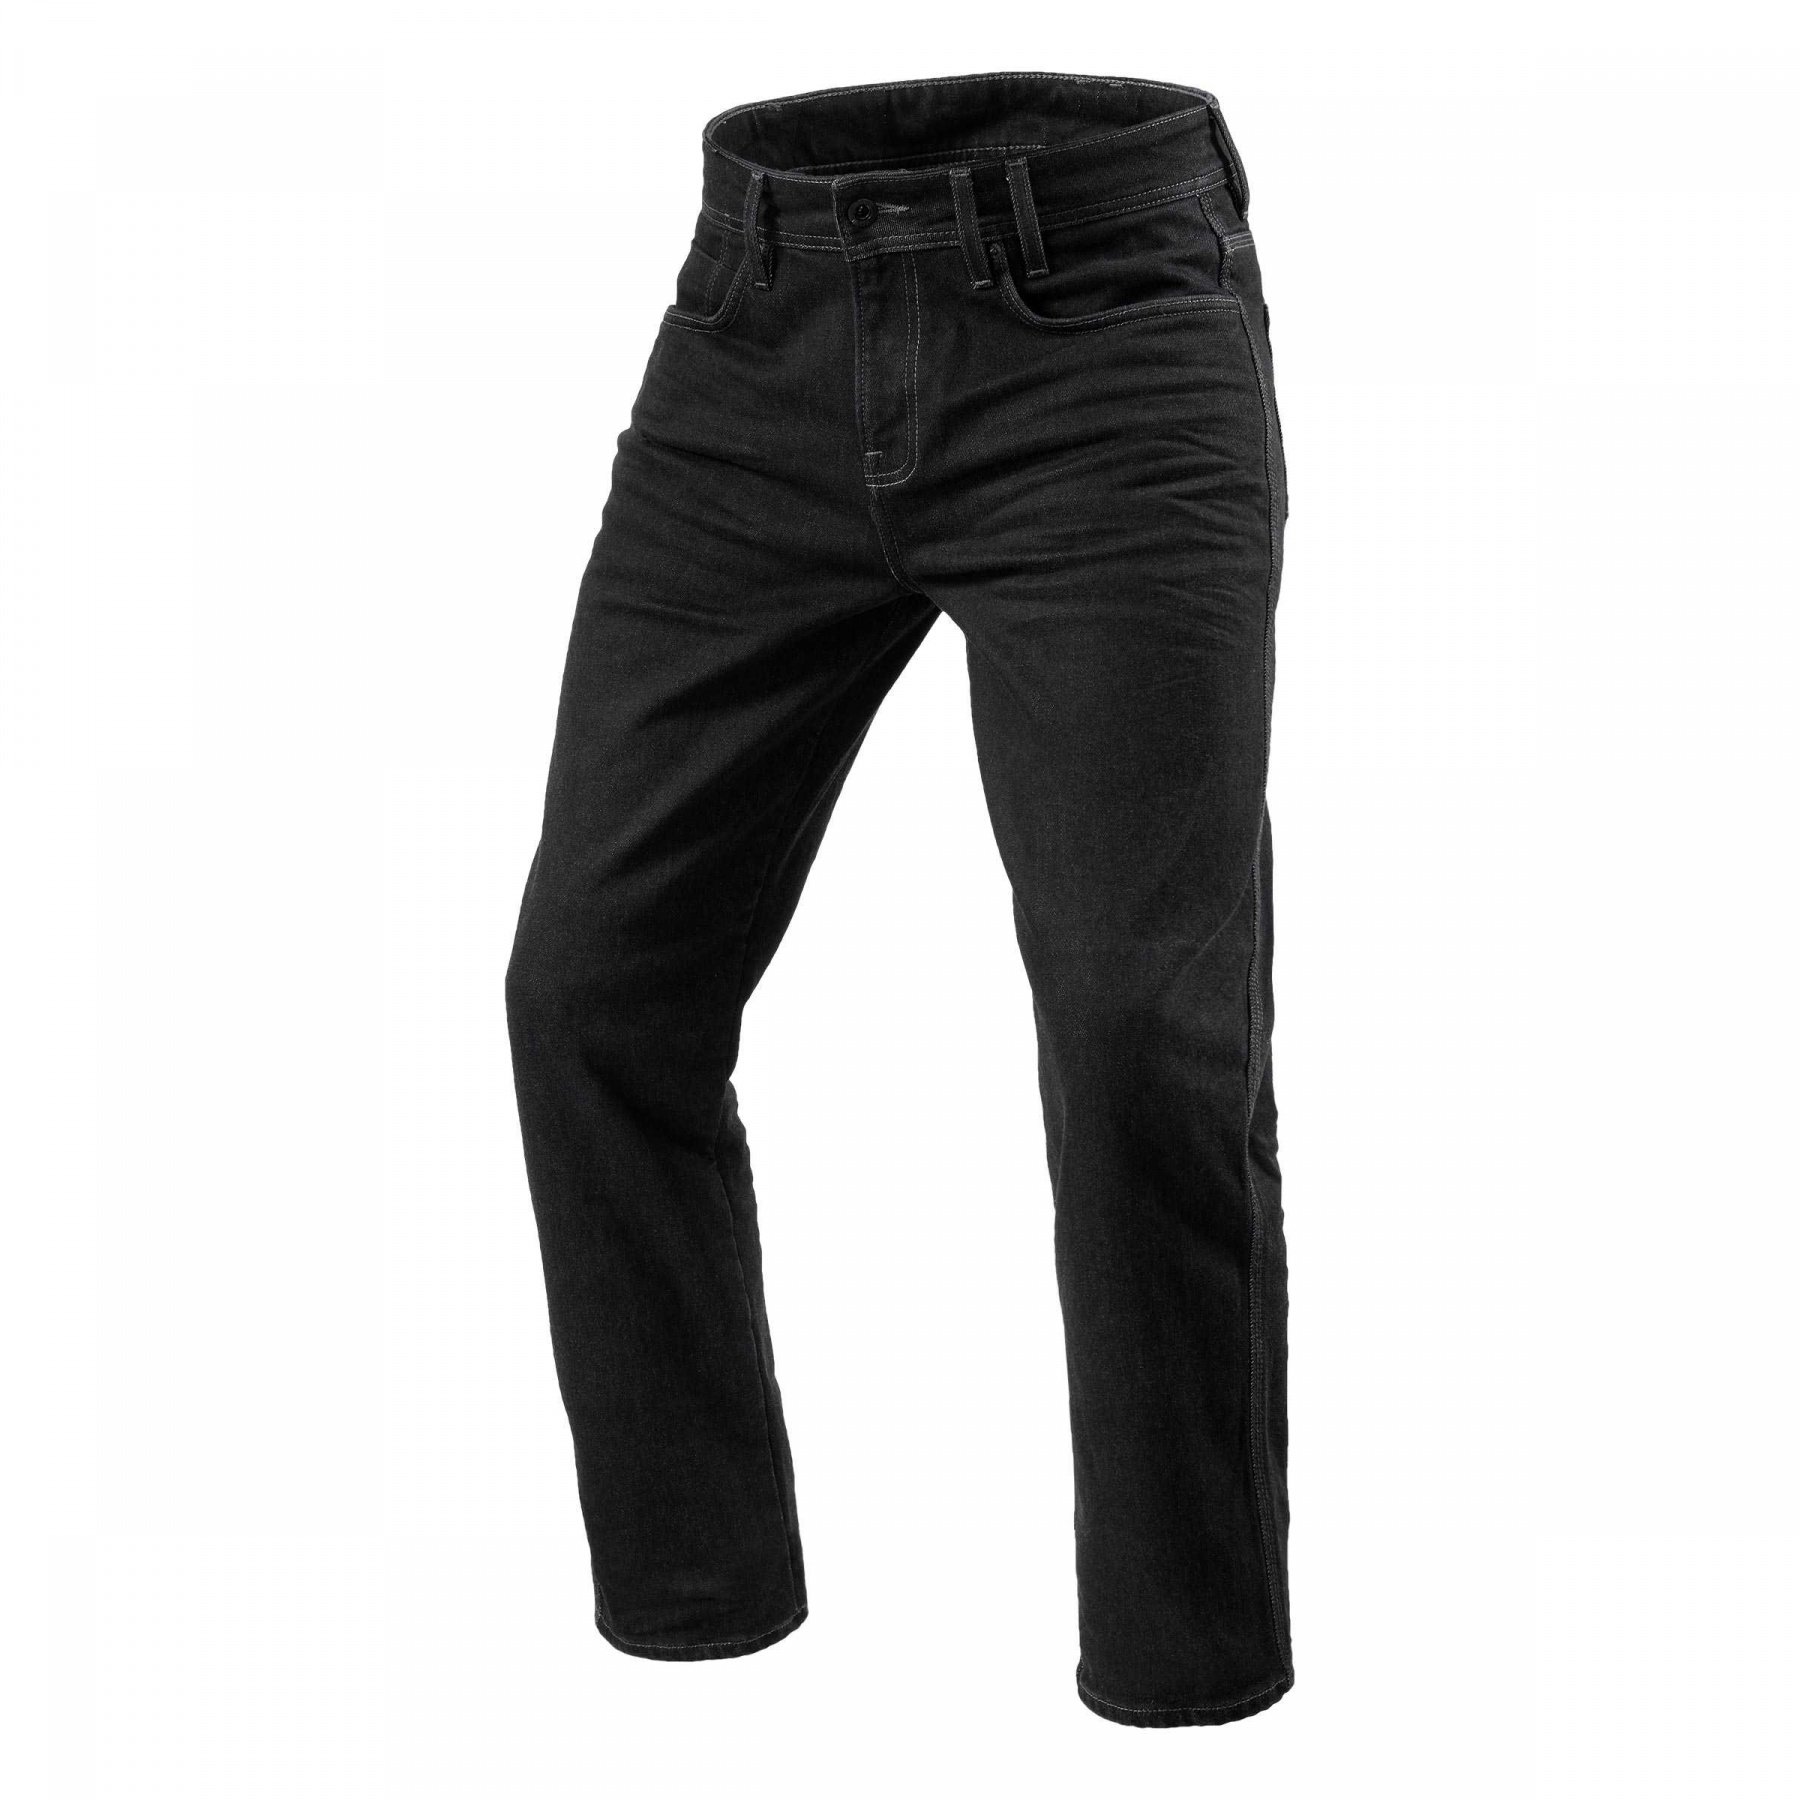 Image of REV'IT! Jeans Lombard 3 RF Dark Blue Used Motorcycle Jeans Size L36/W30 EN